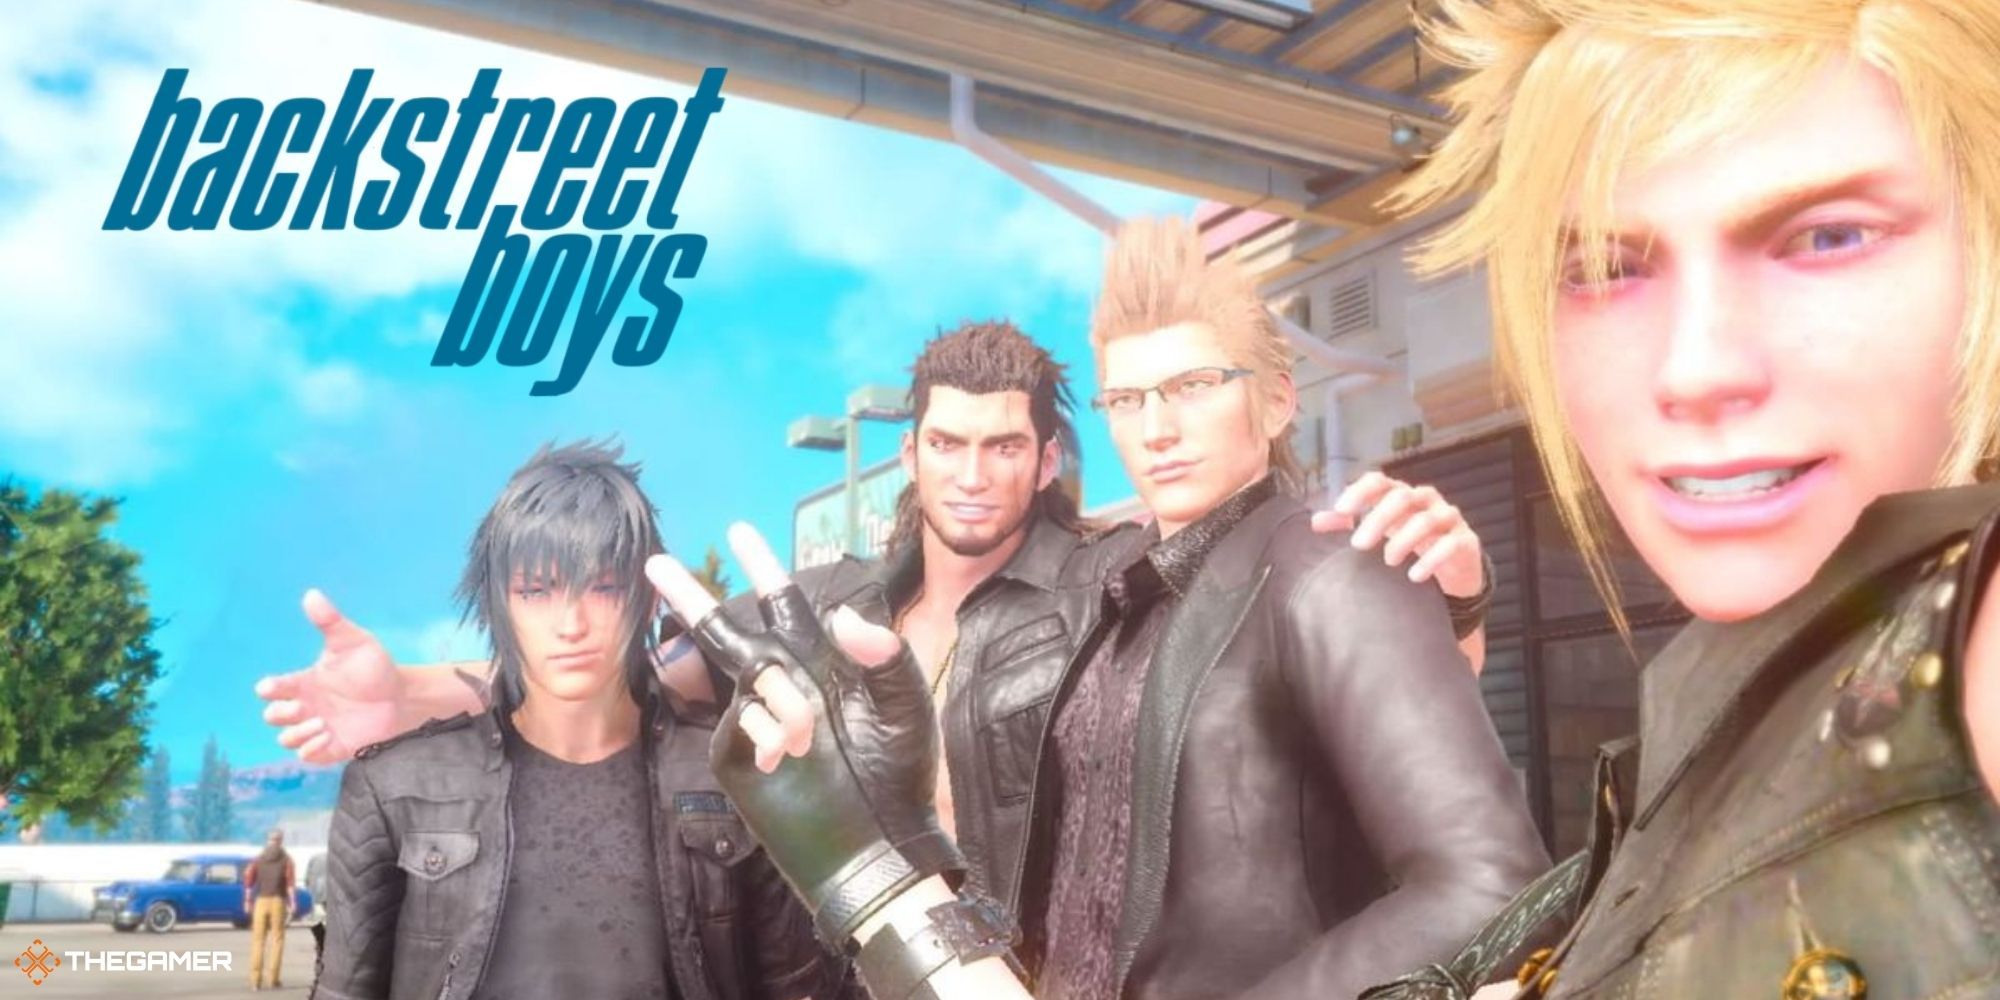 Final Fantasy XV - photo of main characters with backstreet boys logo